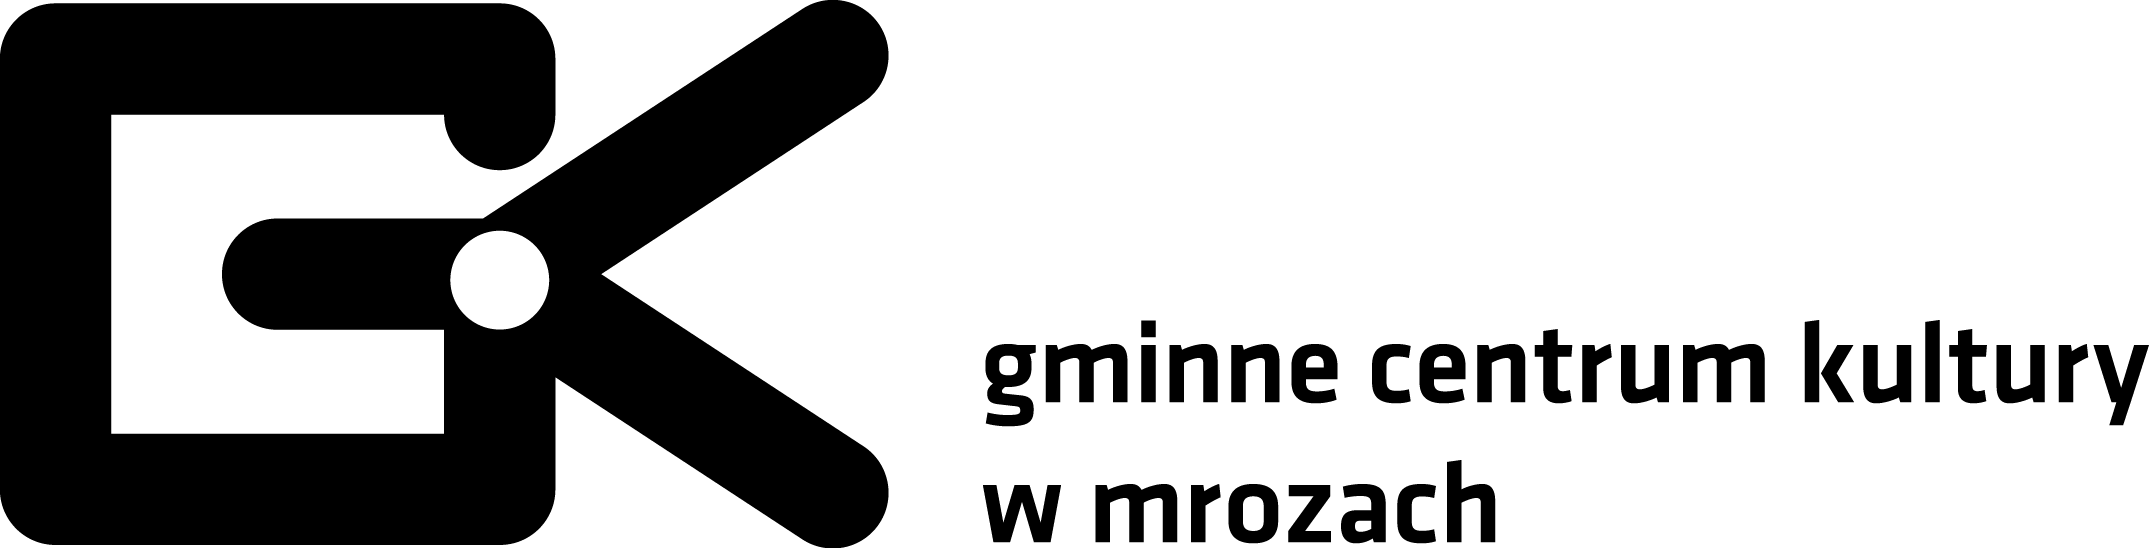 GCK Mrozy logo z opisem poziom mono